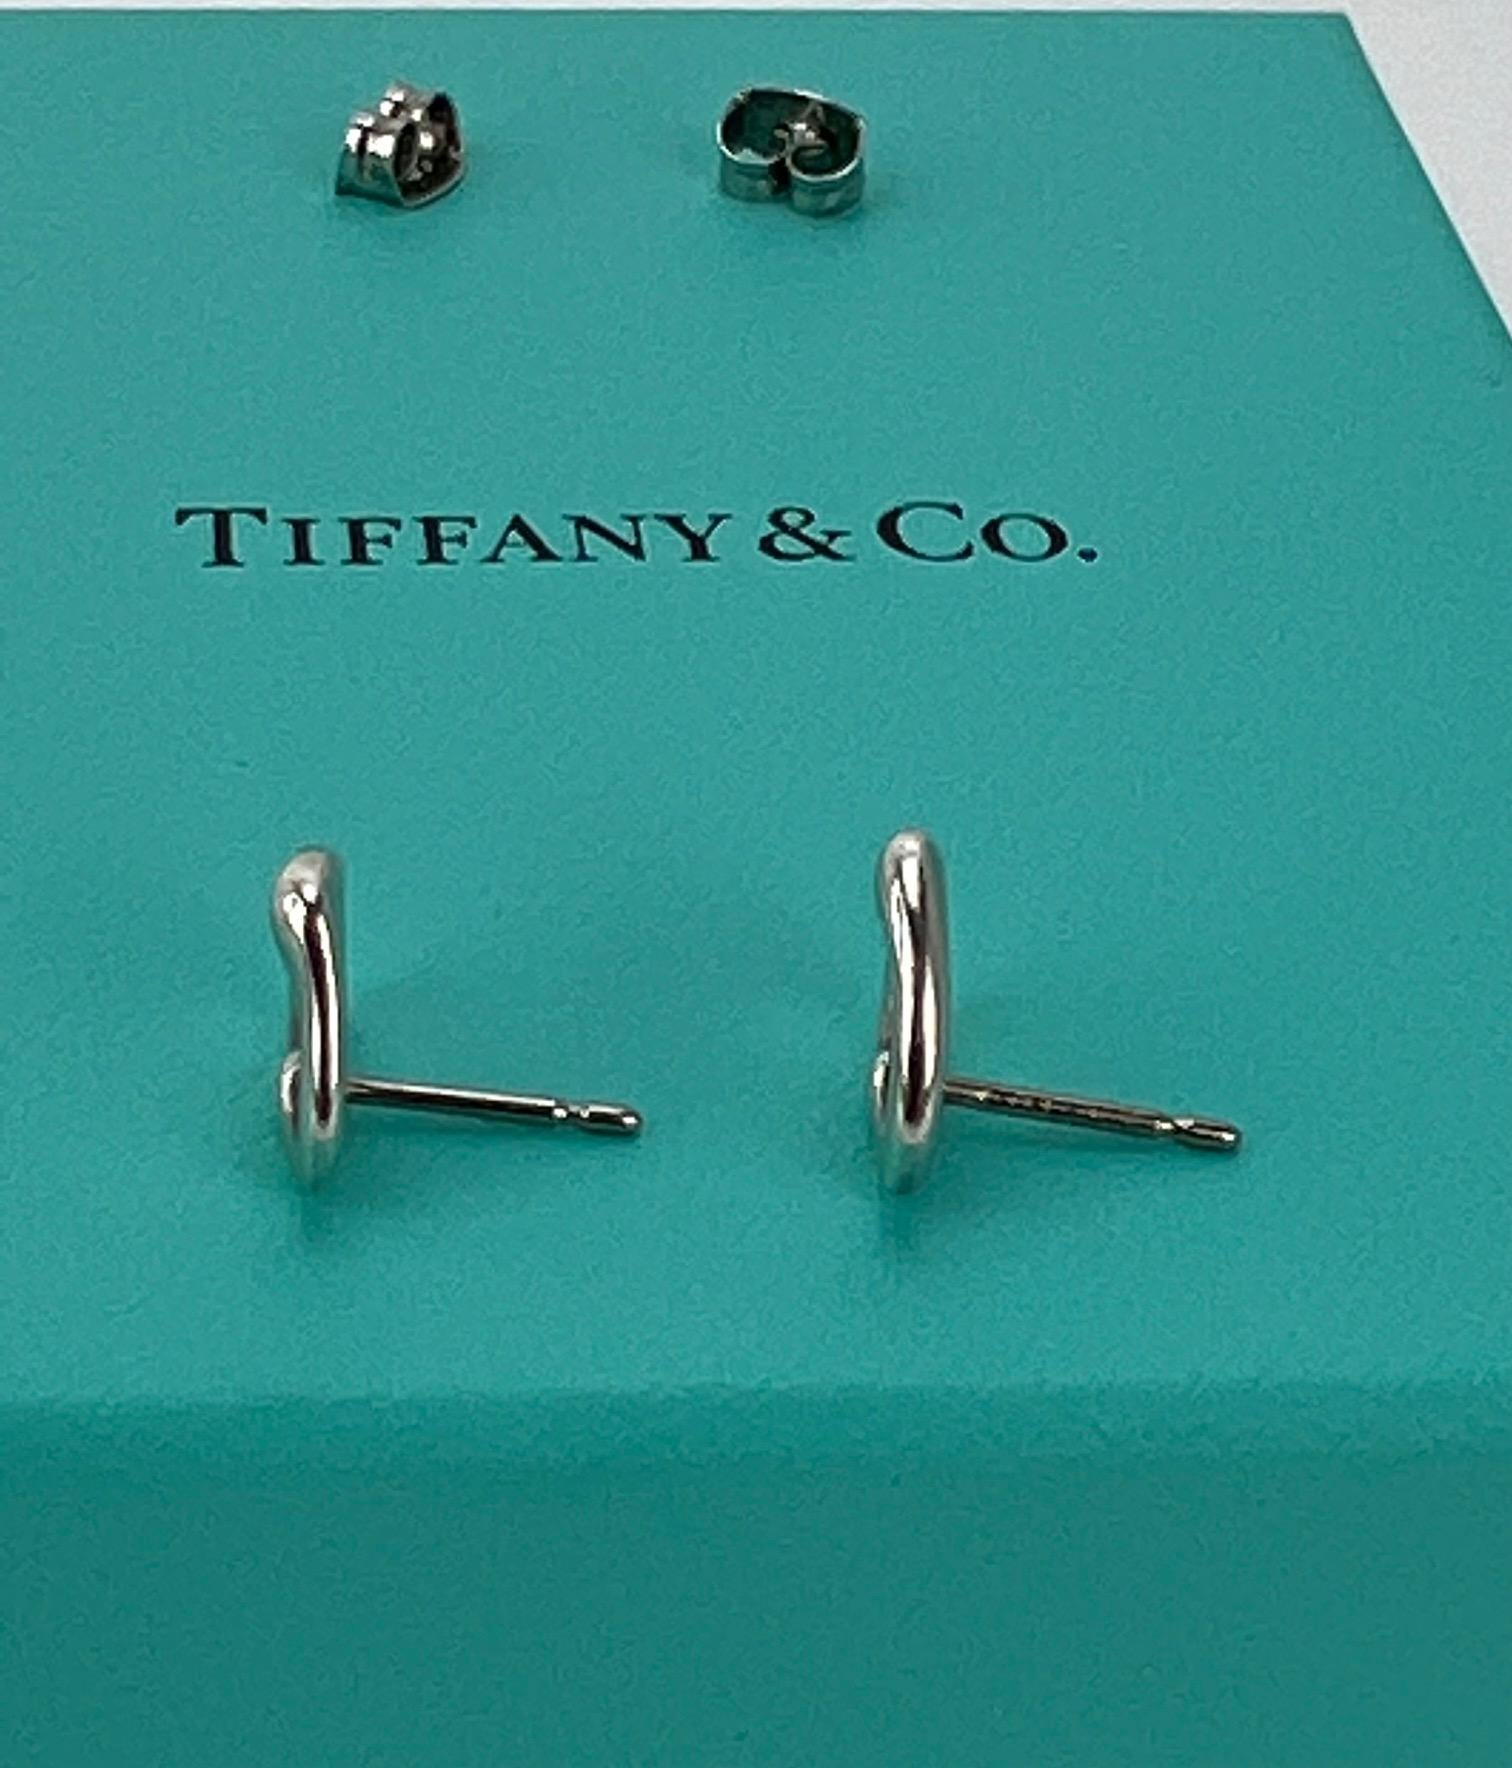  TIFFANY Open Heart Stud Earrings in Sterling Silver 925 Elsa Peretti  5